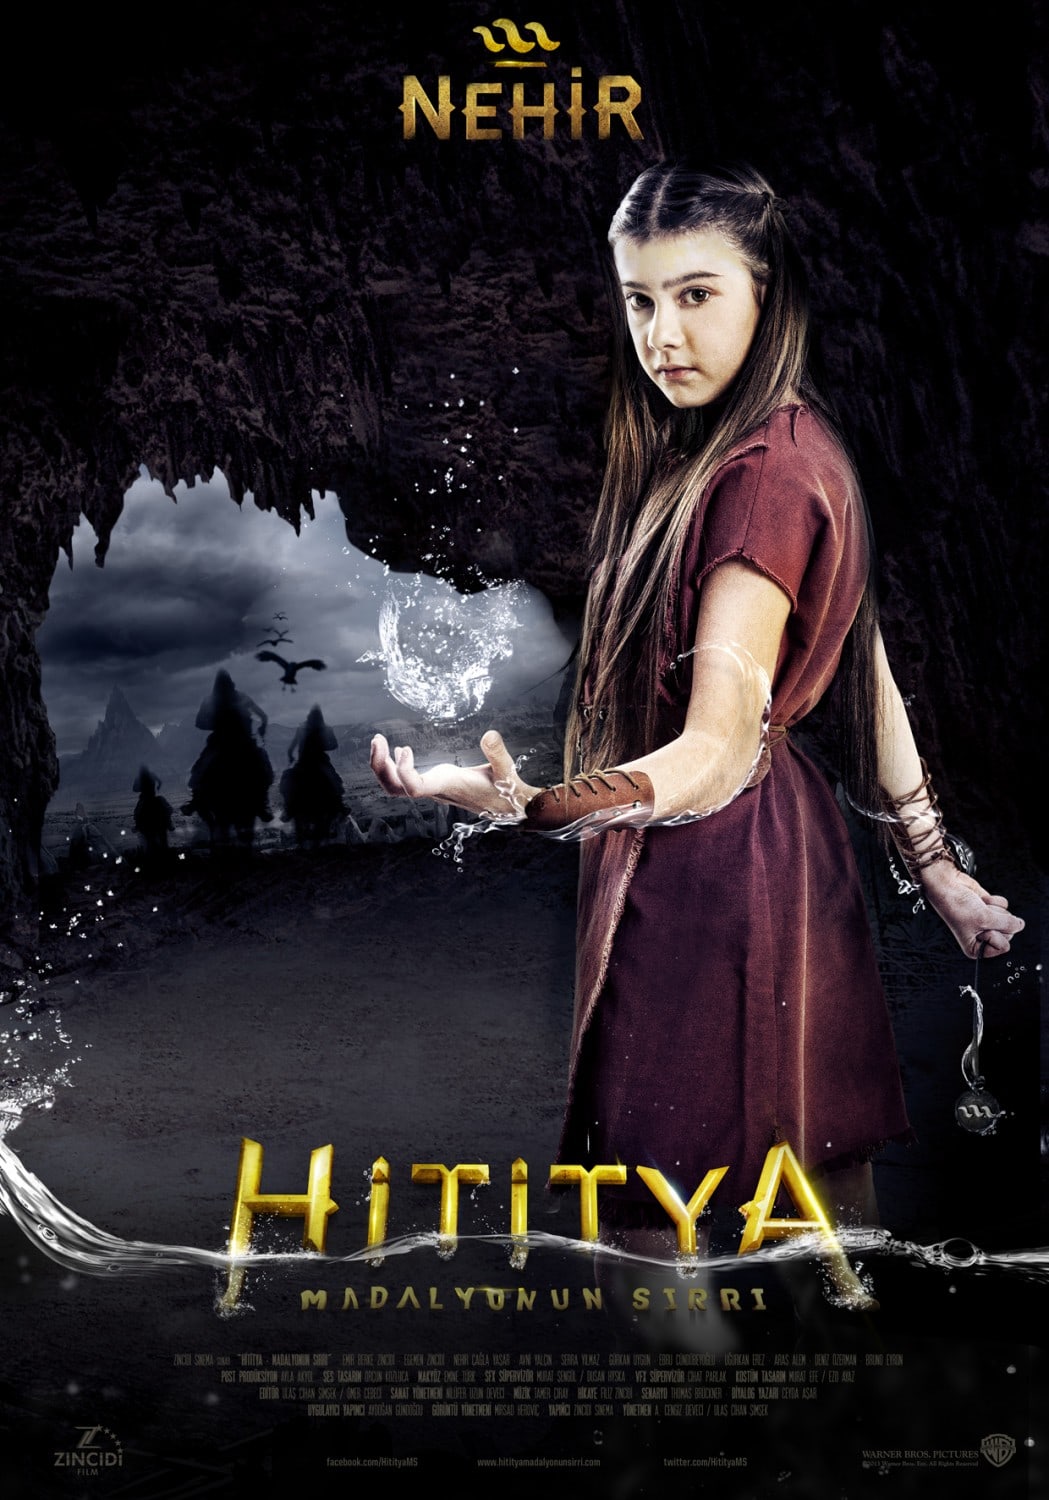 تحميل فيلم hititya madalyonun sırrı 2013